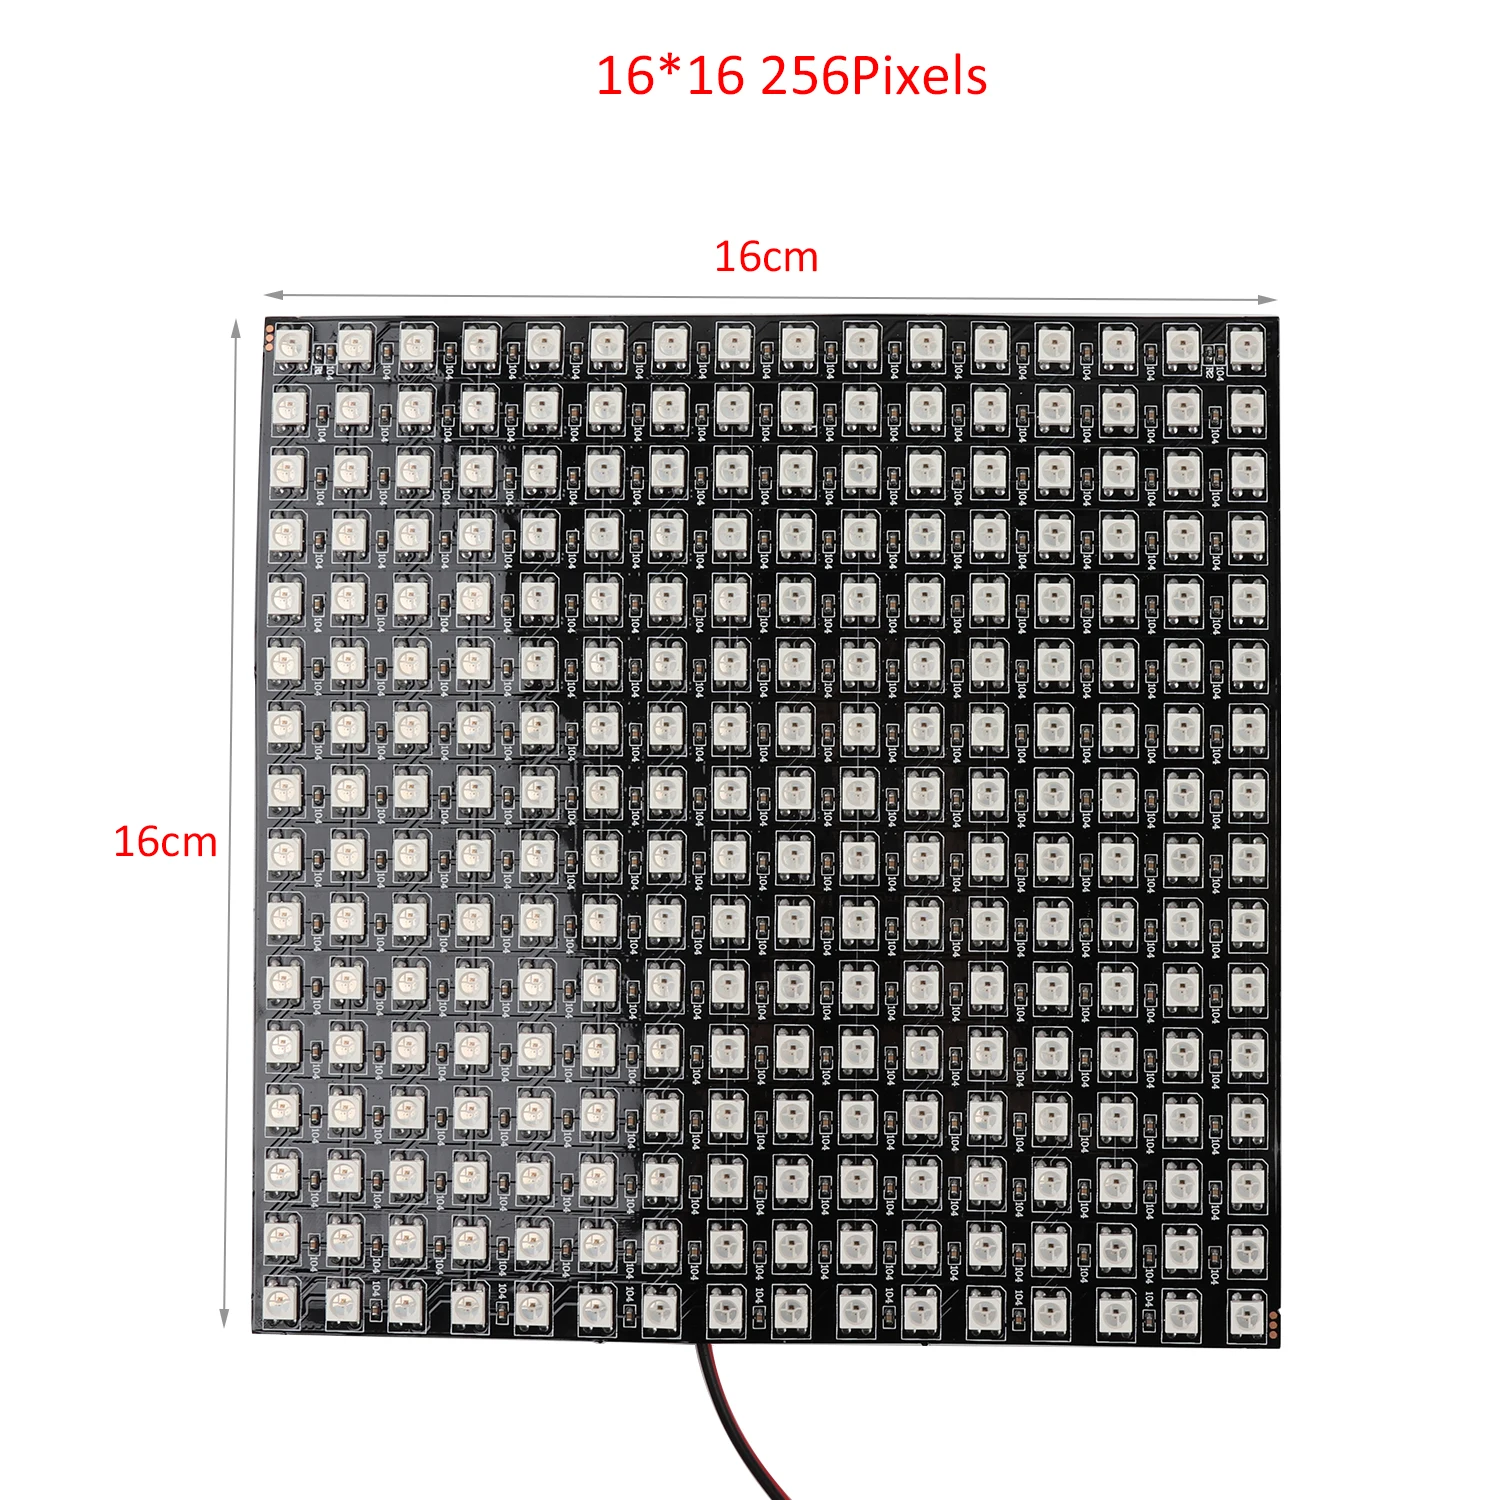 WS2812 матрица DC5V светодиодный модуль 256 пикселей цифровая Гибкая светодиодный панель индивидуально Адресуемая 5050 RGB WS2812B светодиодный светильник JQ